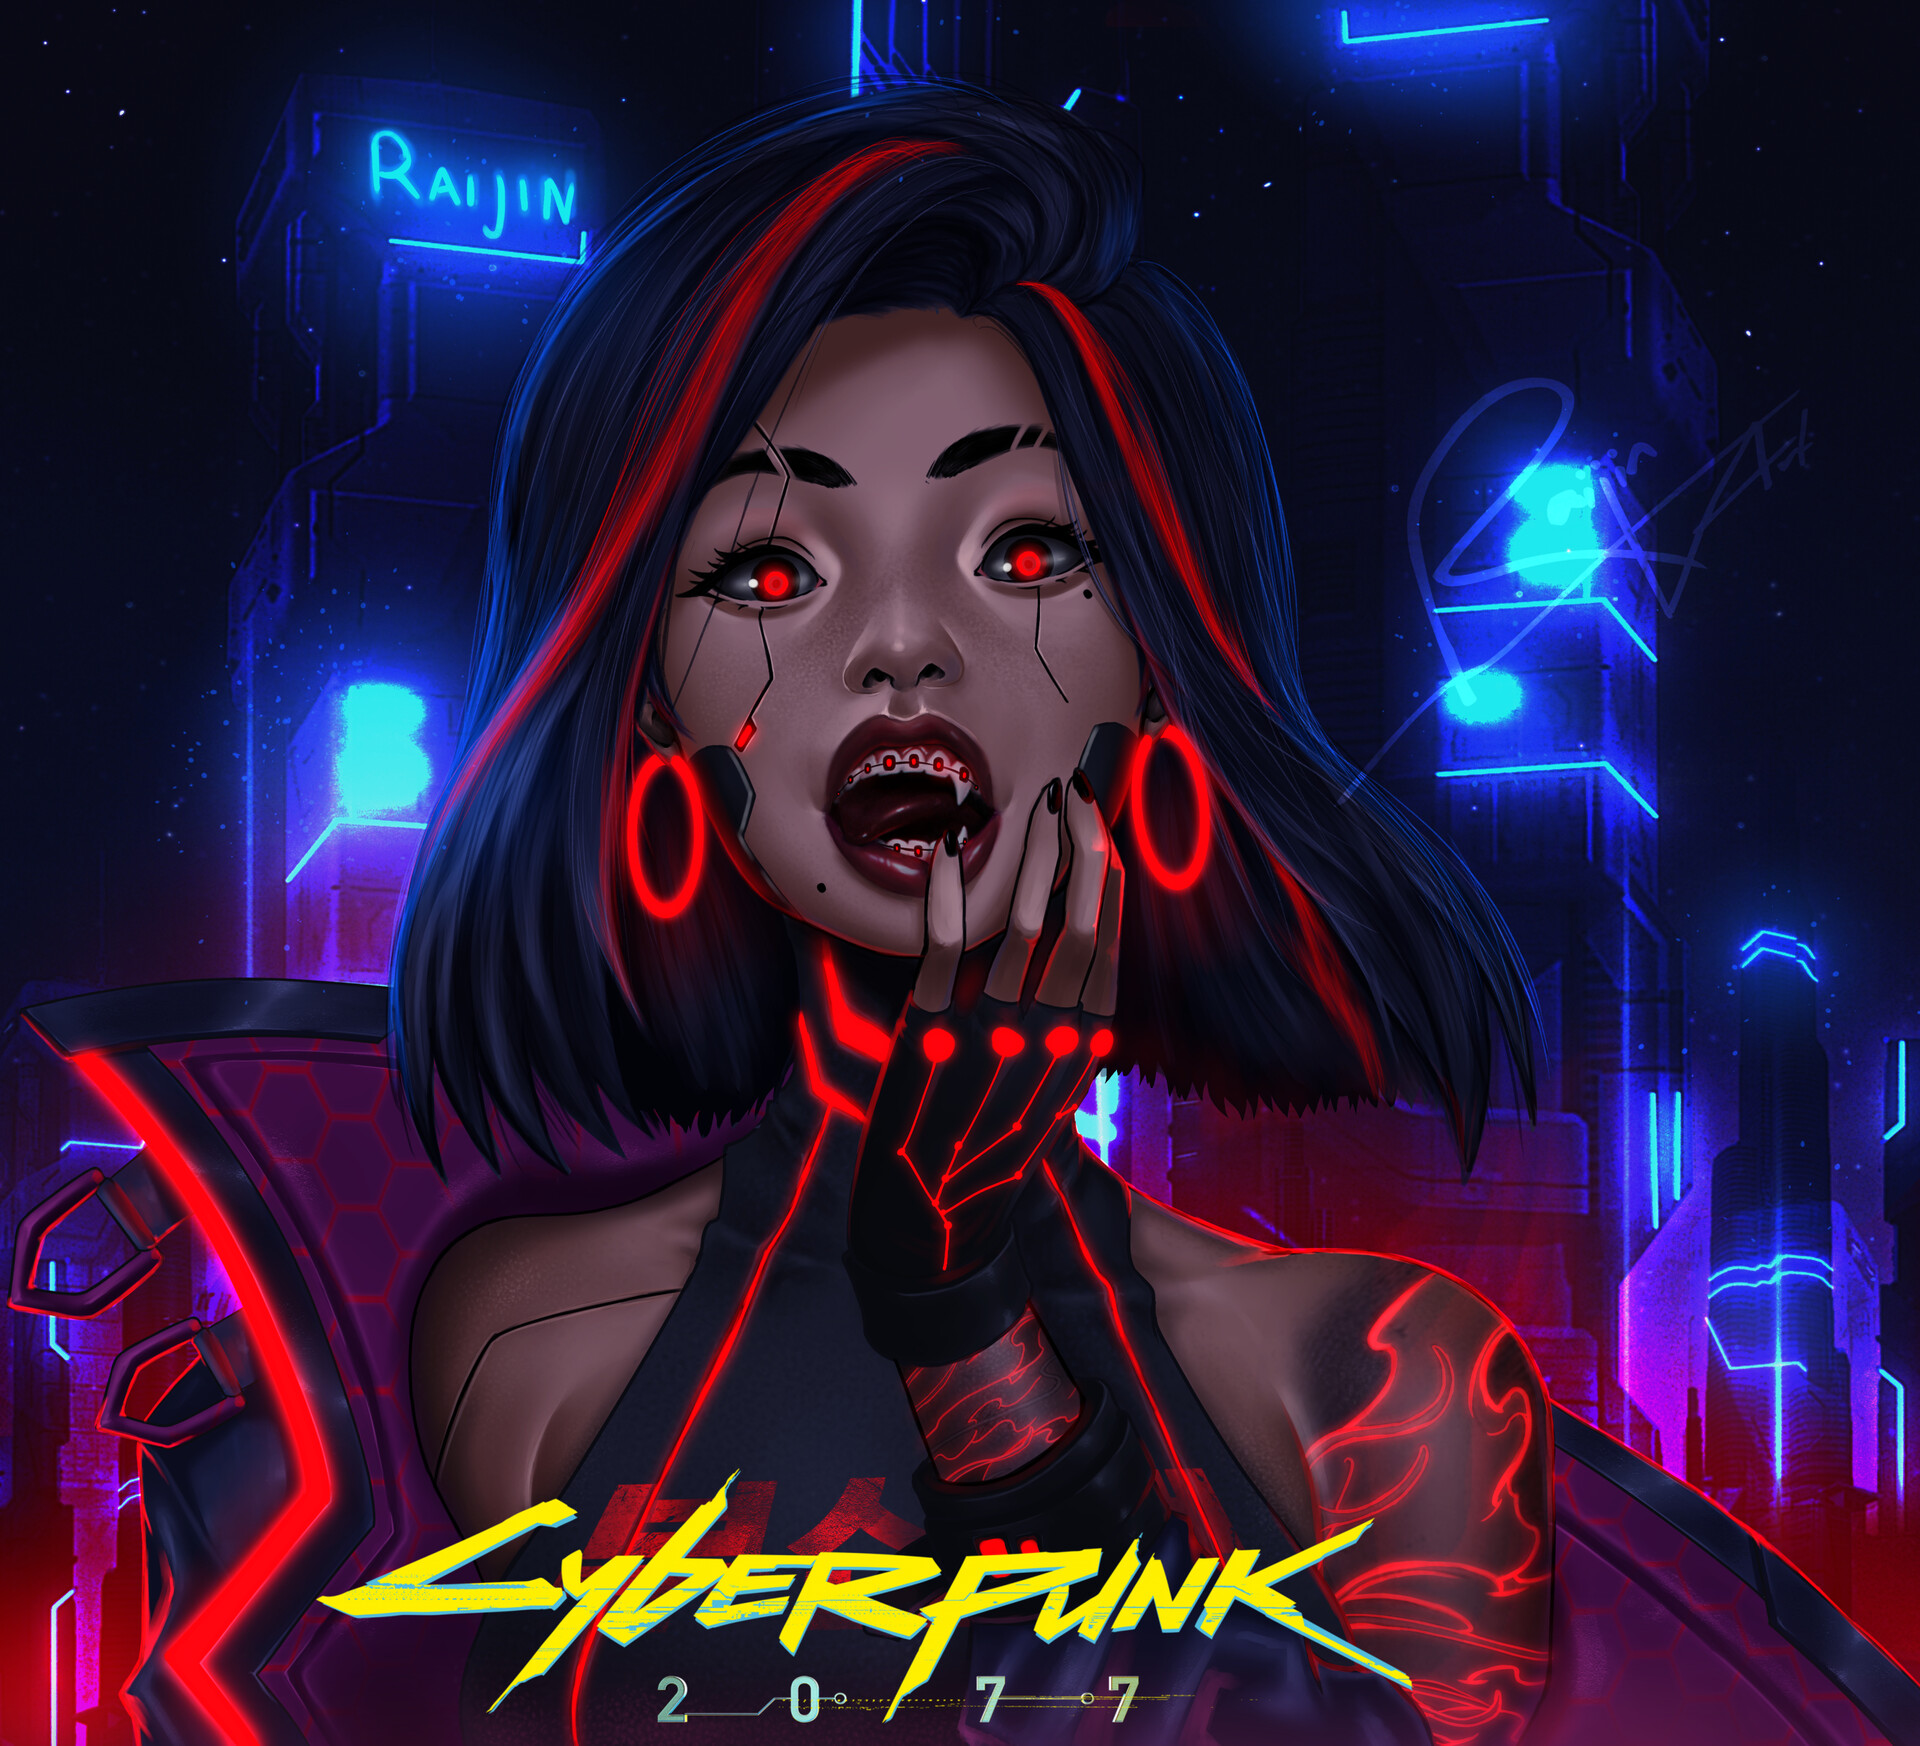 Cyberpunk Girl Red By Raijin Art Rcyberpunk 0413